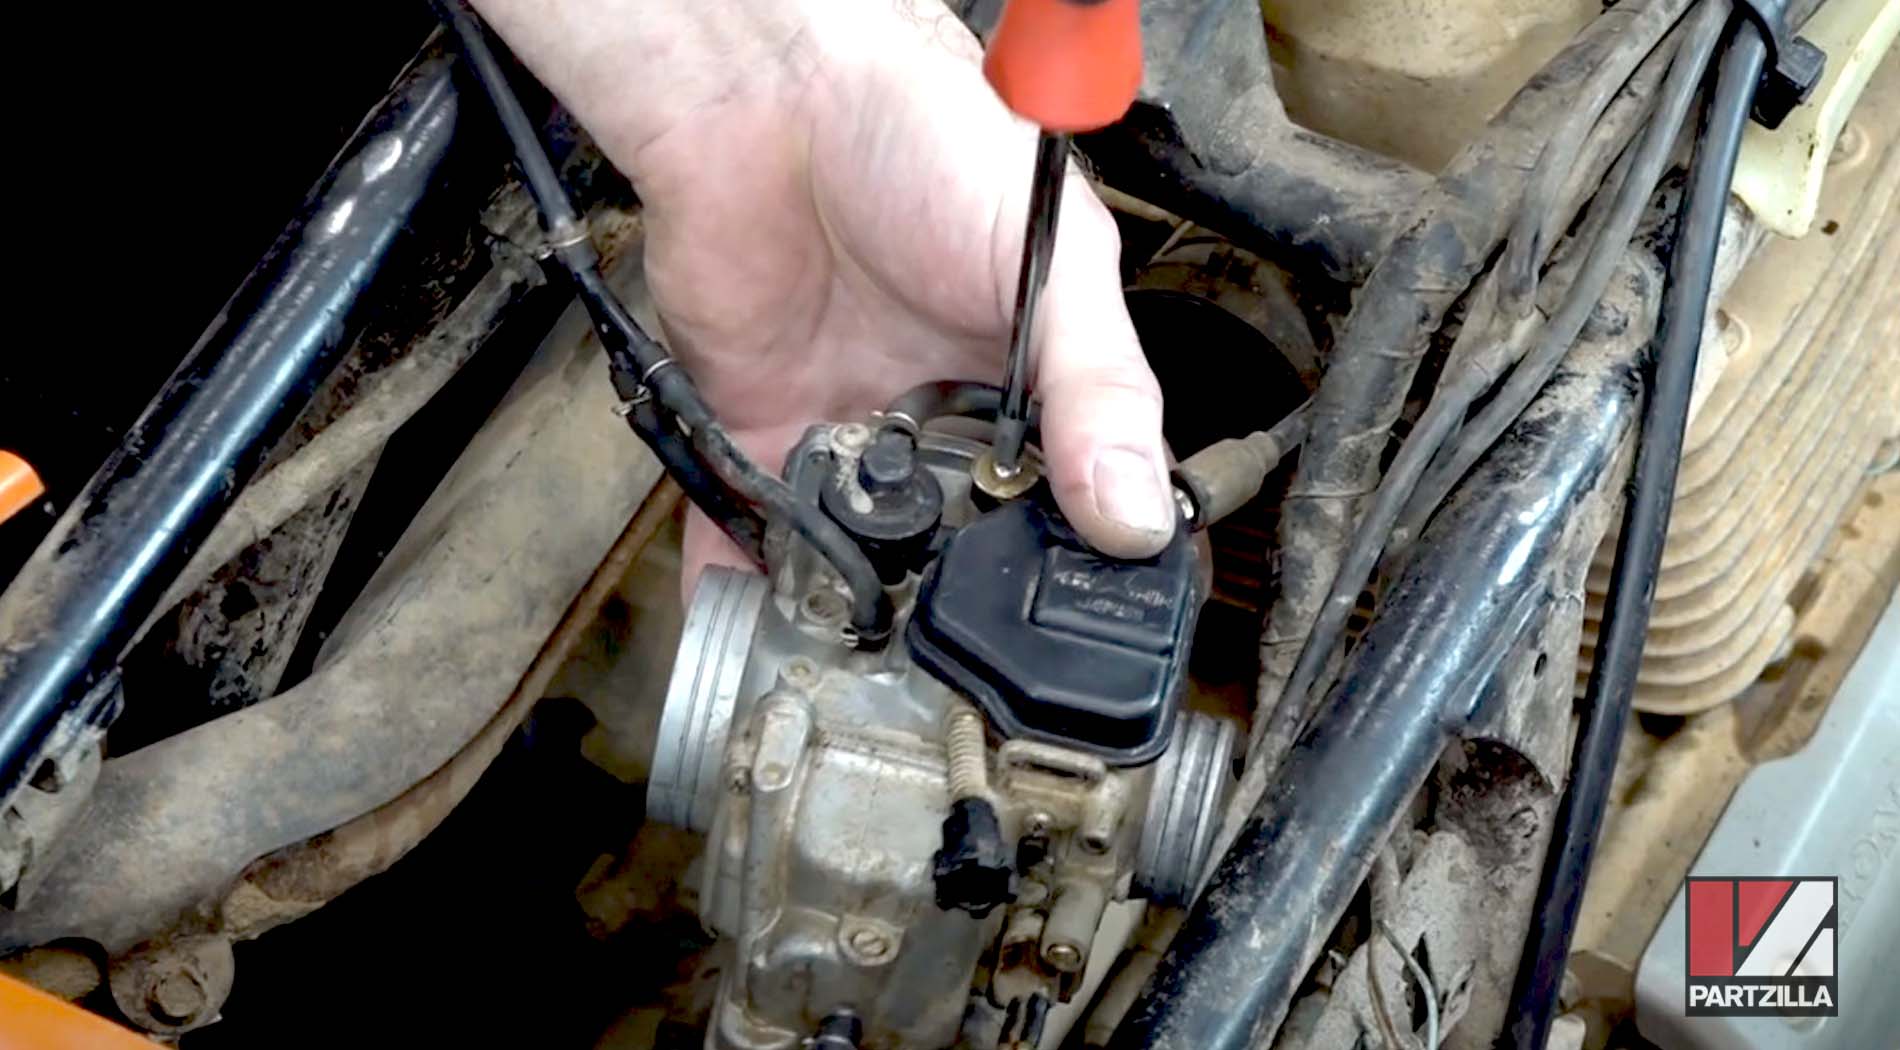 Honda Rancher TRX350 top end rebuild carburetor install